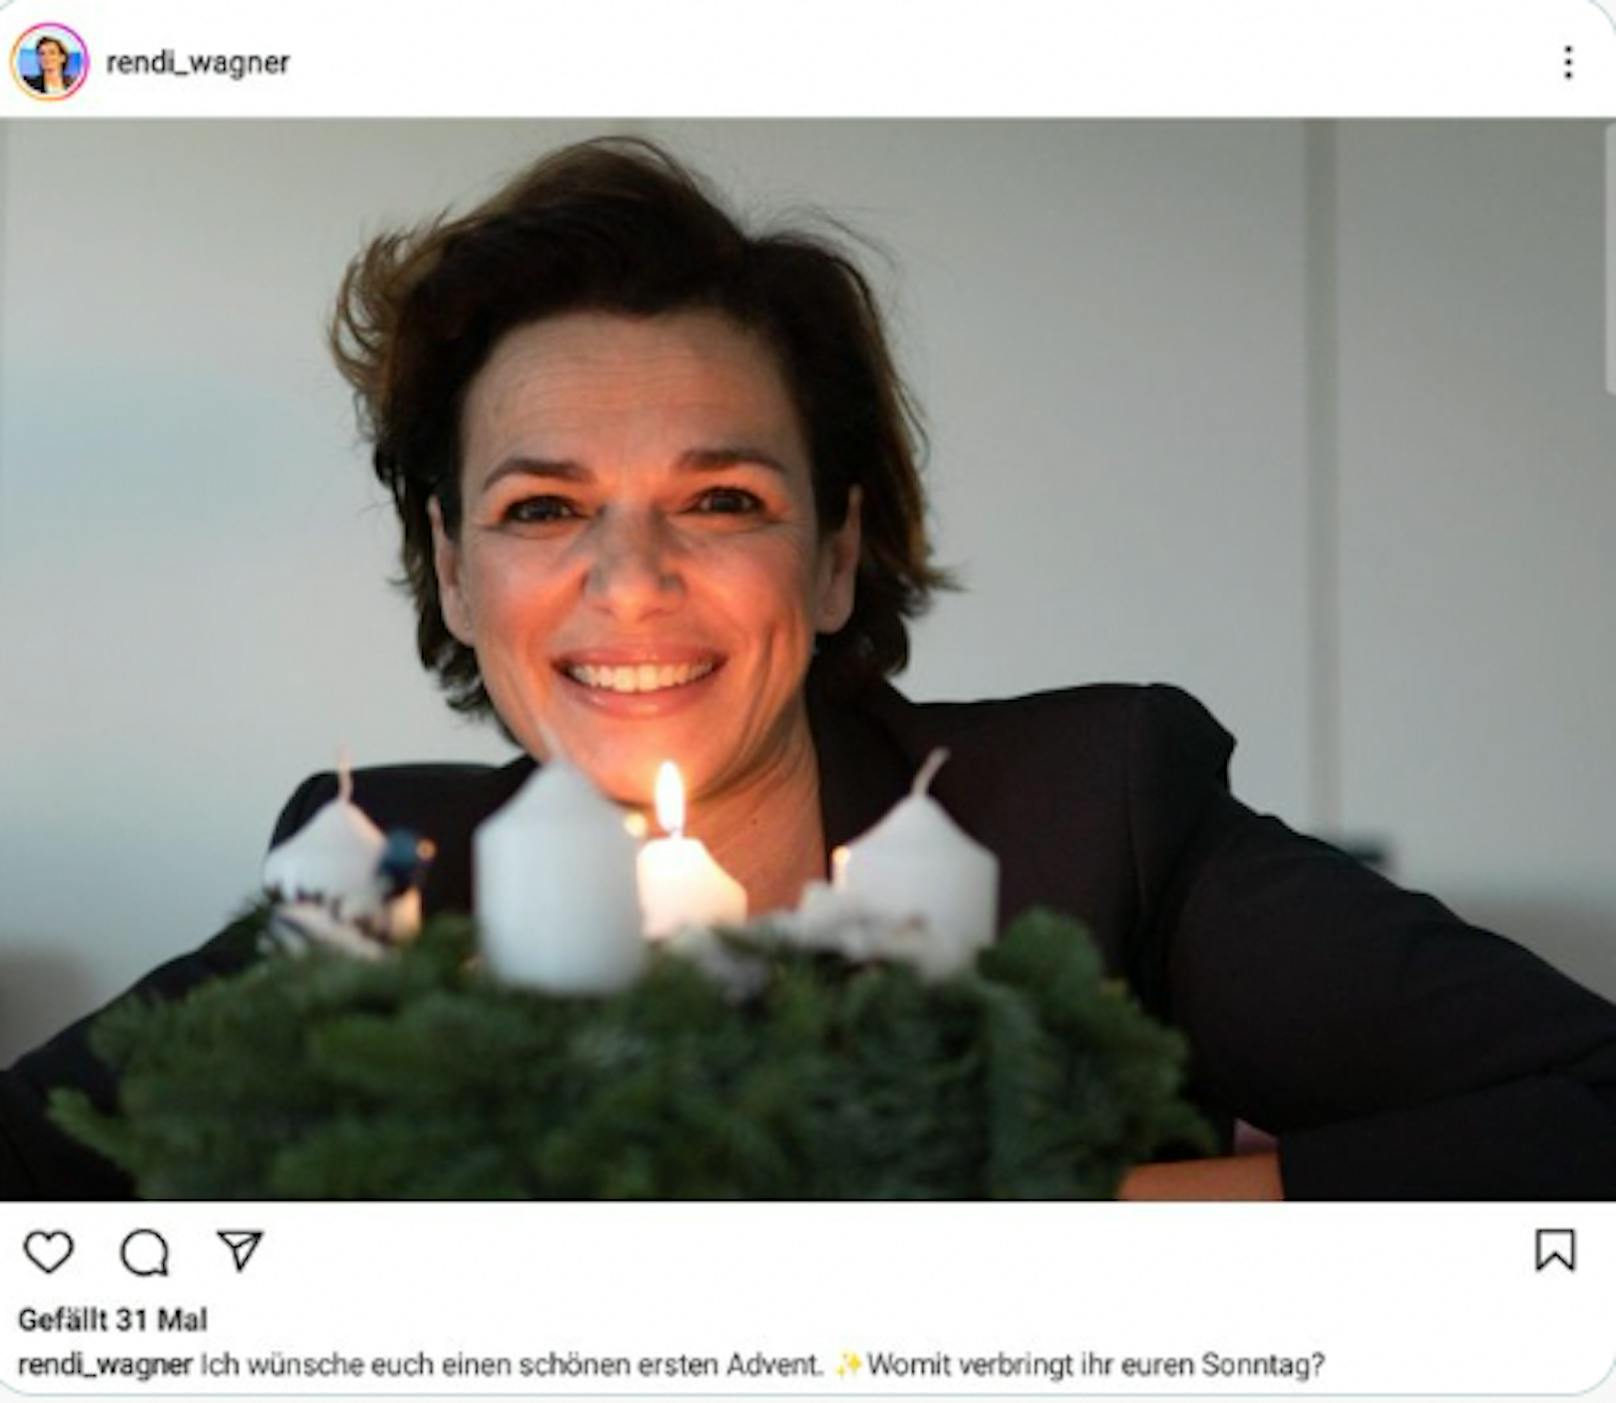 SPÖ-Chefin Rendi-Wagner kredenzte auffällig un-rote Kerzen.